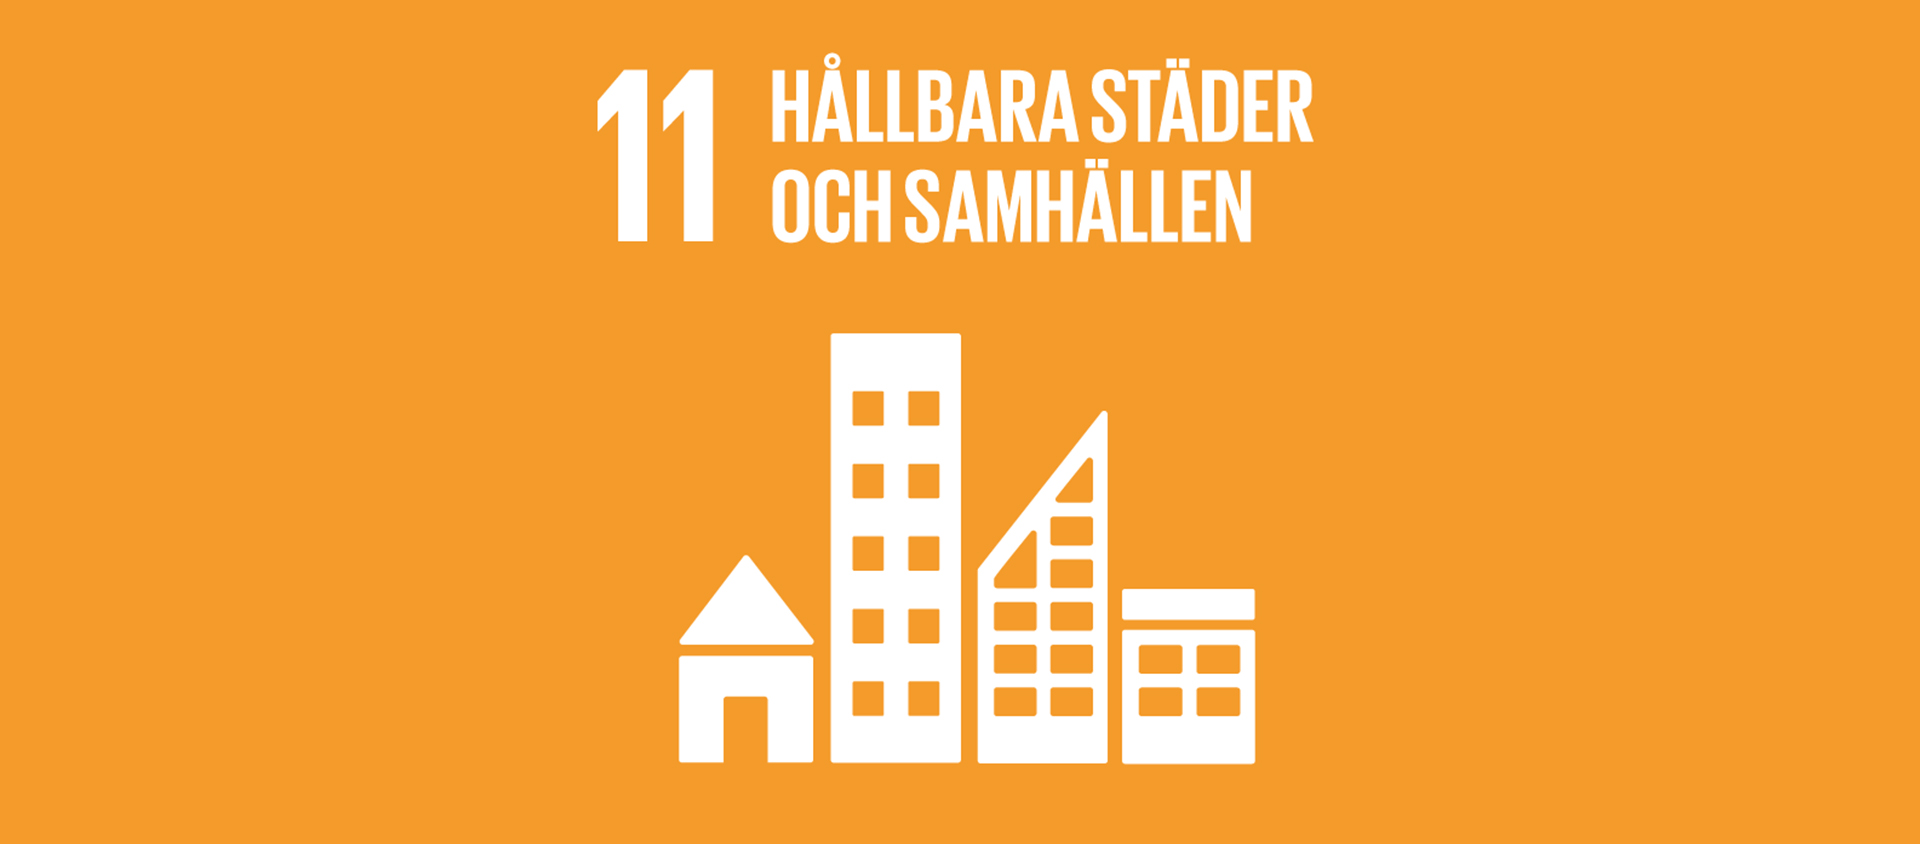 Globala målen 11 - Hållbara städer och samhällen